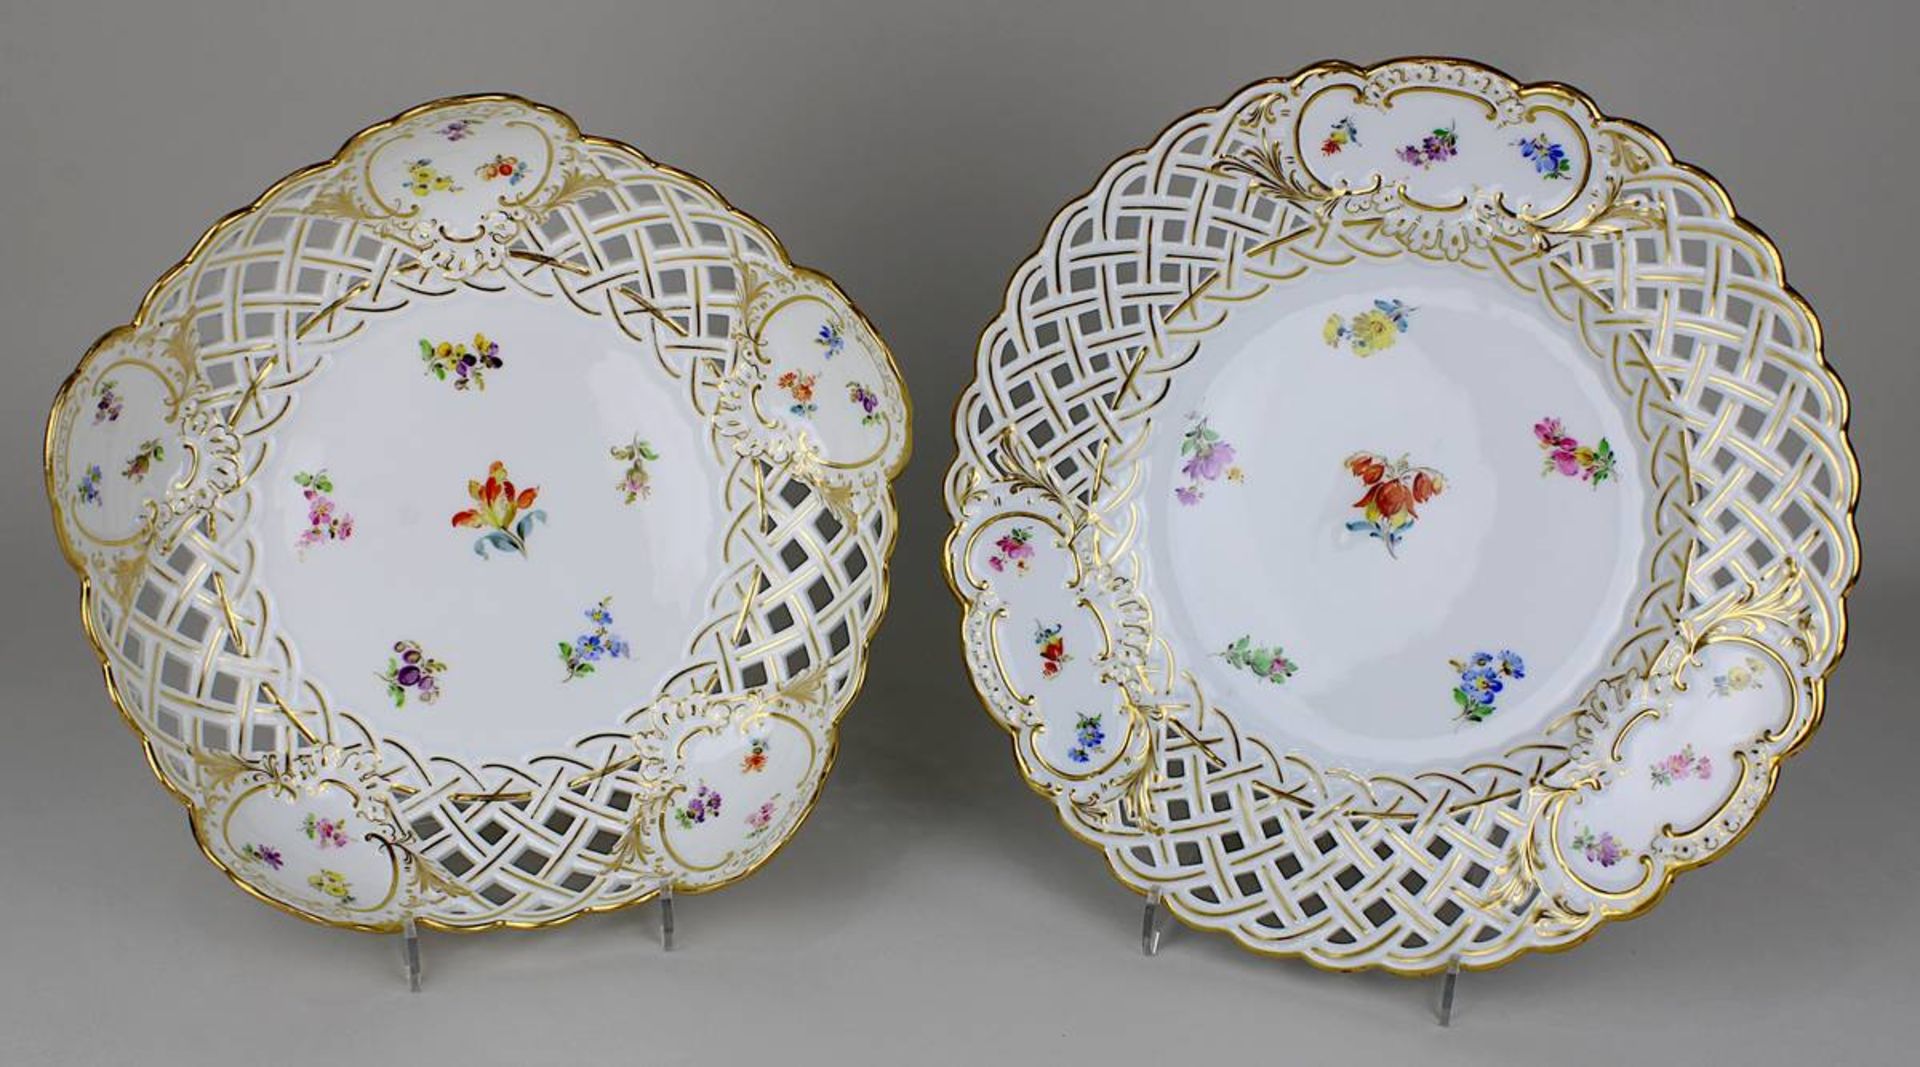 Schale und Teller mit Korbflechtrand, Meissen um 1900, Porzellan, farbig u. gold staffiert, mit